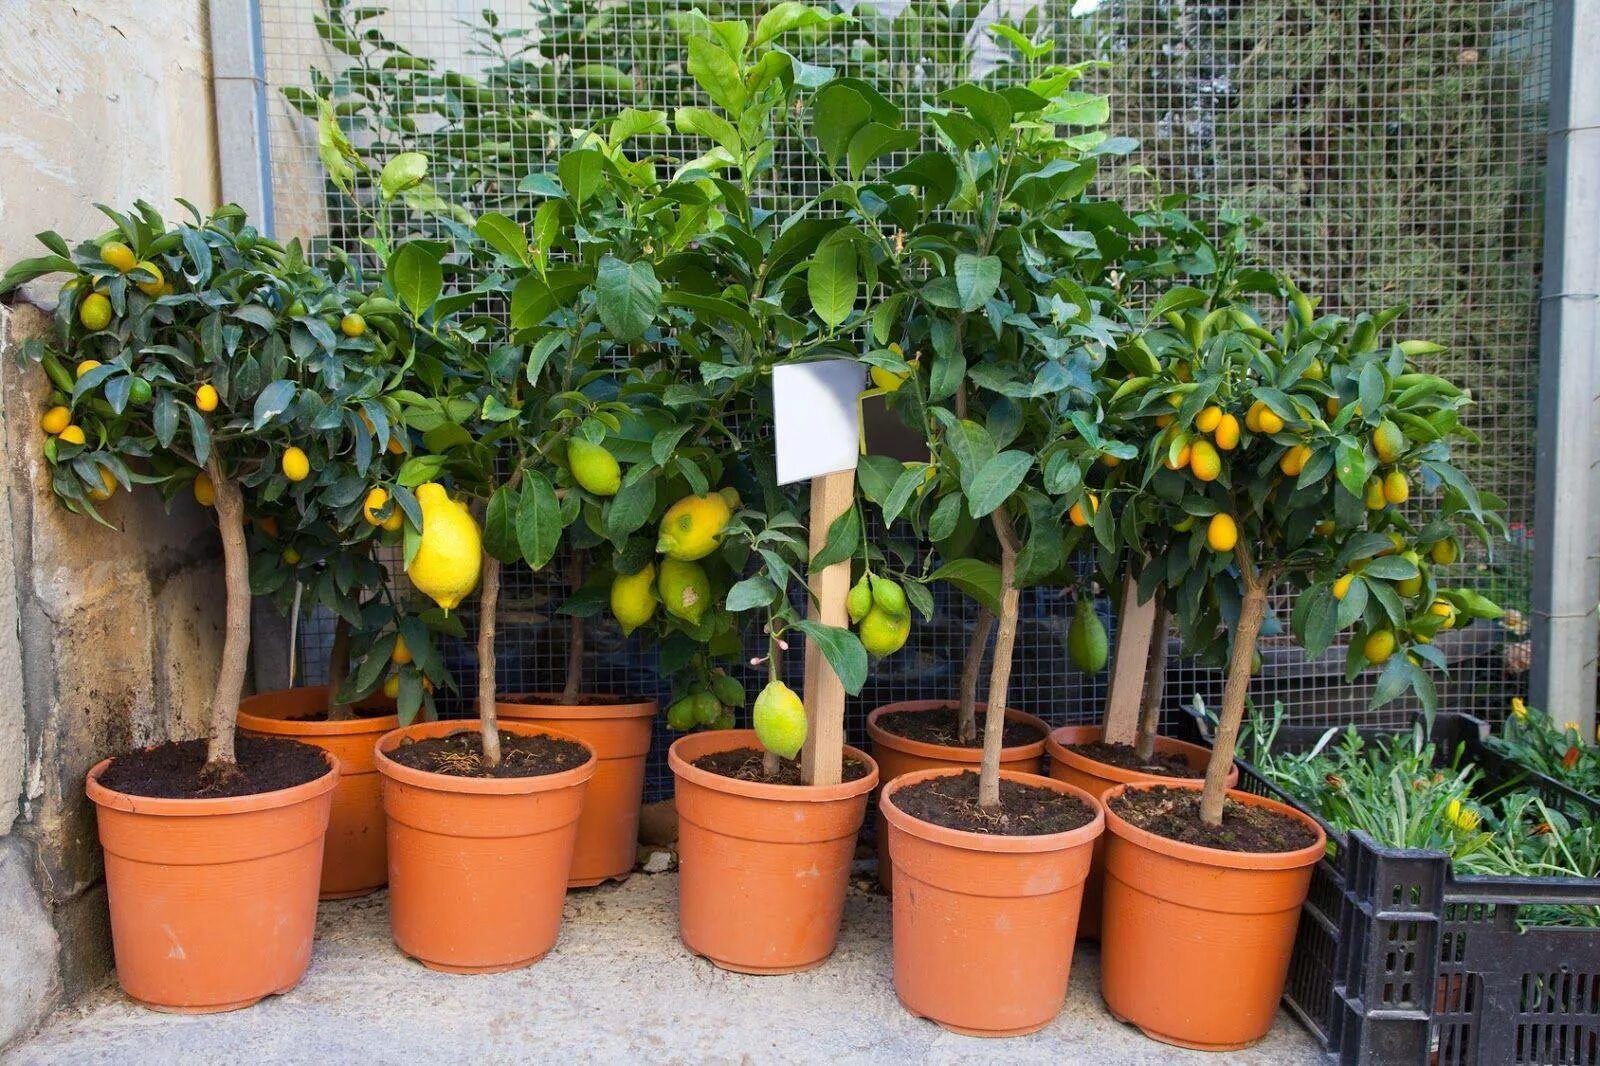 Цитрус (комнатное растение) лимон Мейера. Цитрус лимон дерево. Цитрус (комнатное растение) лимон Лунарио. Цитрус (Citrus) – лимон дерево. Комнатный лимон мандарин